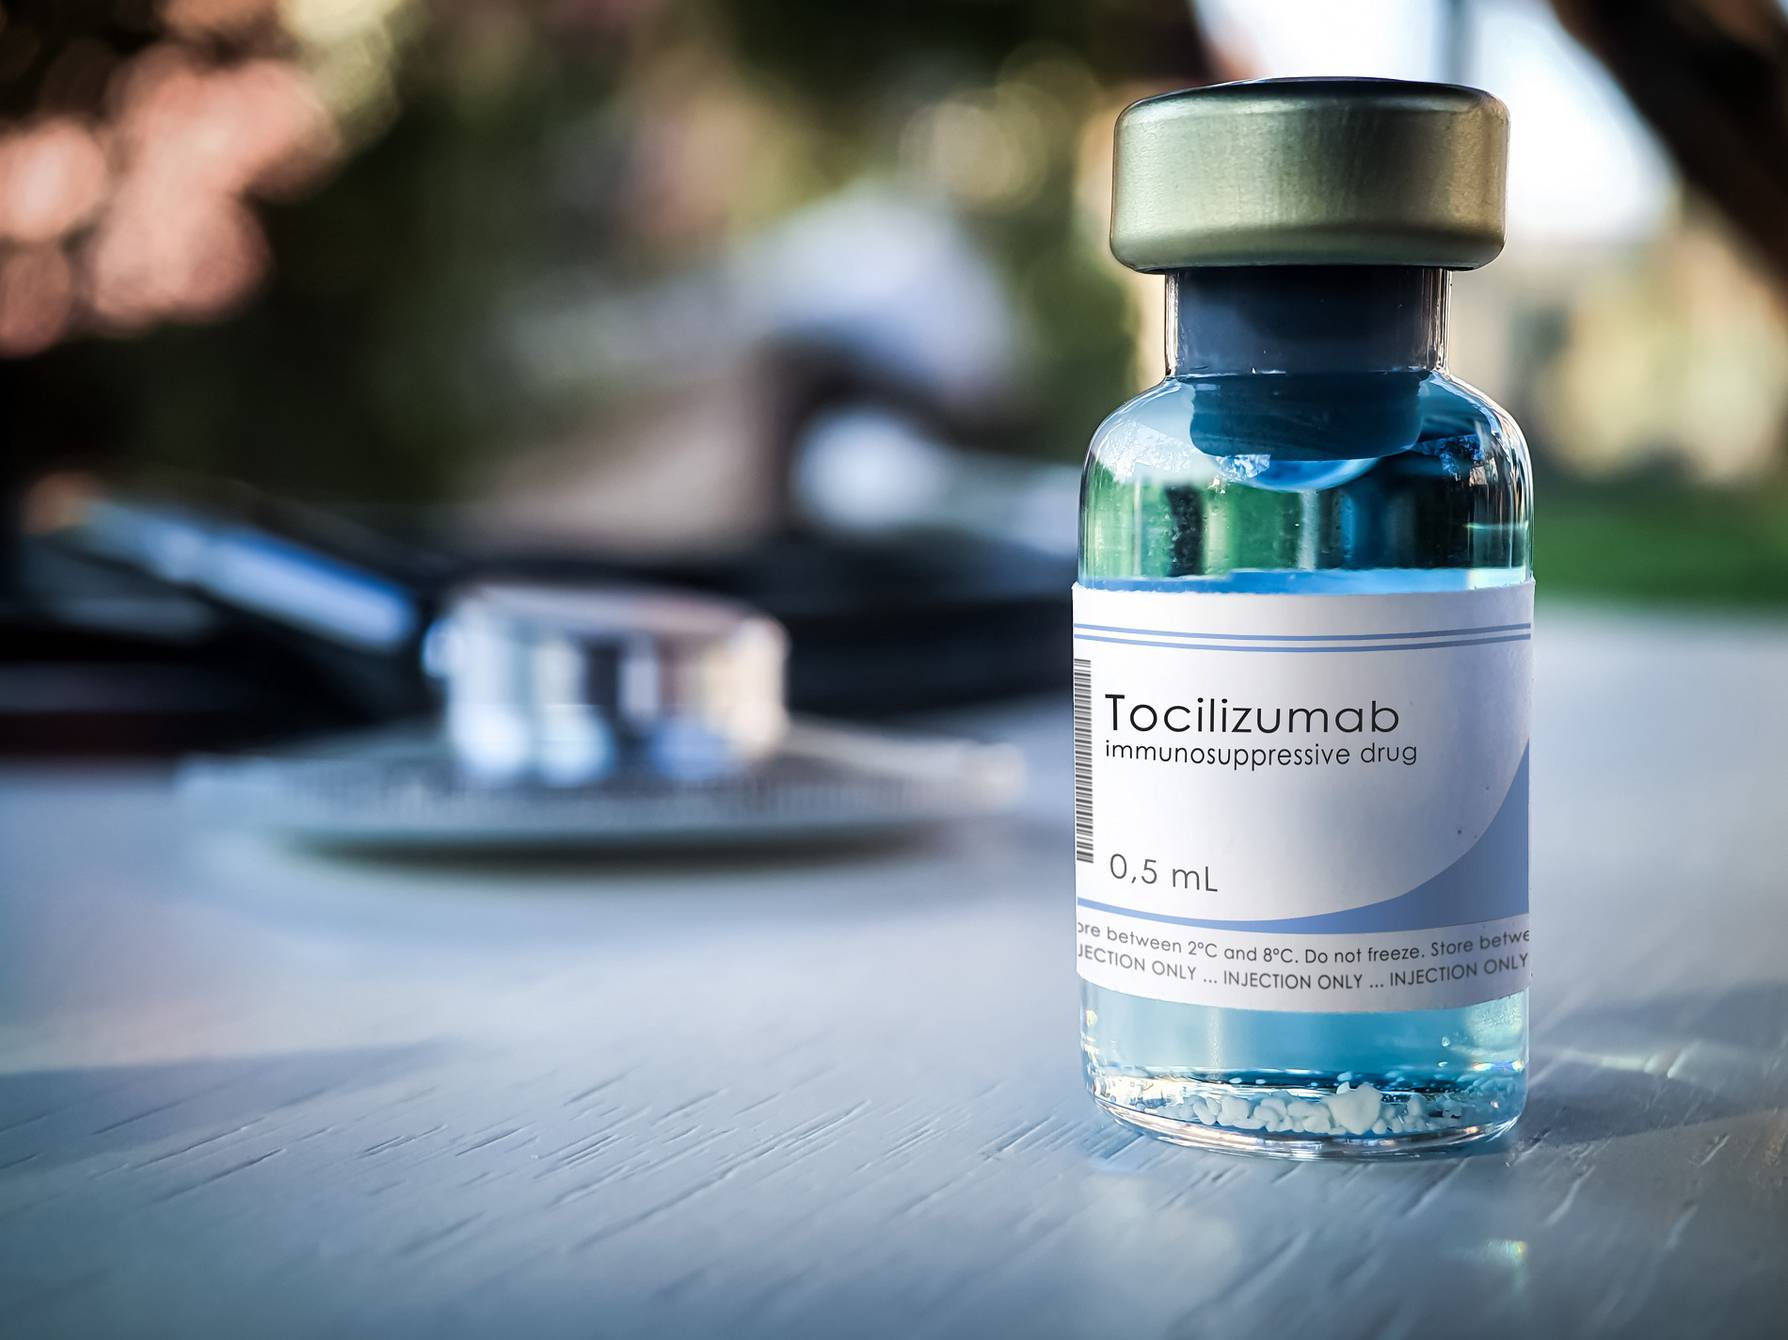 La Agencia Europea del Medicamento evalúa el uso de tocilizumab en adultos con COVID-19 grave